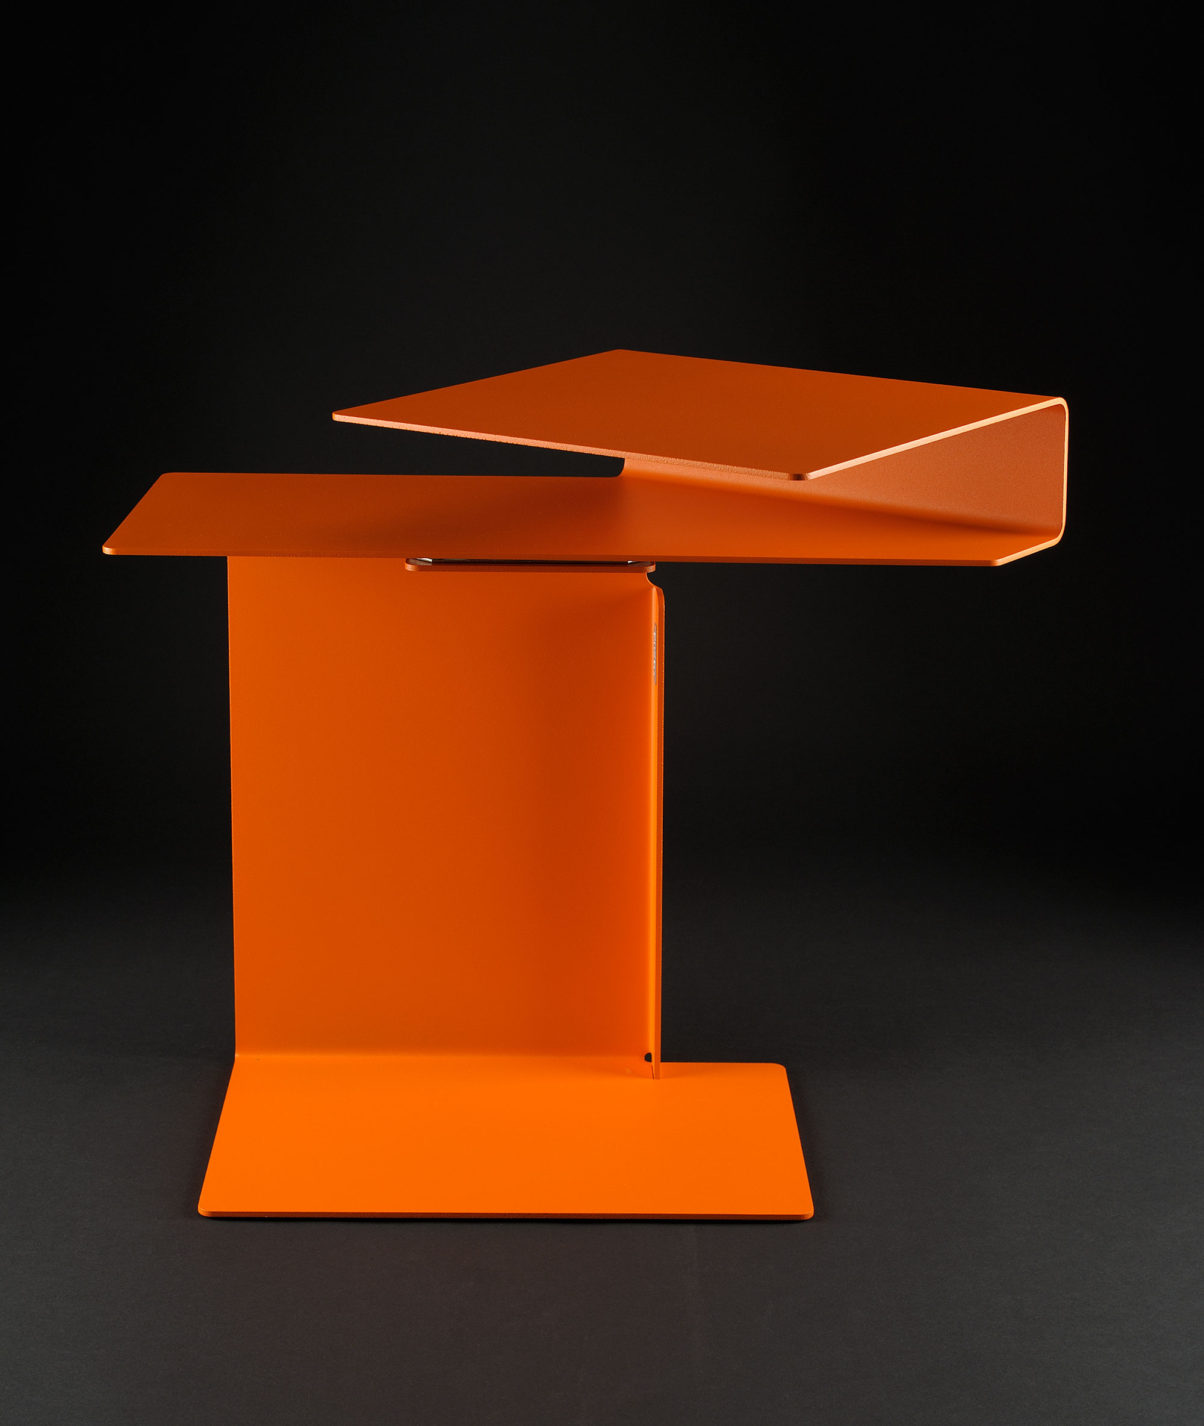 Petite table composée d’une feuille de métal orange.